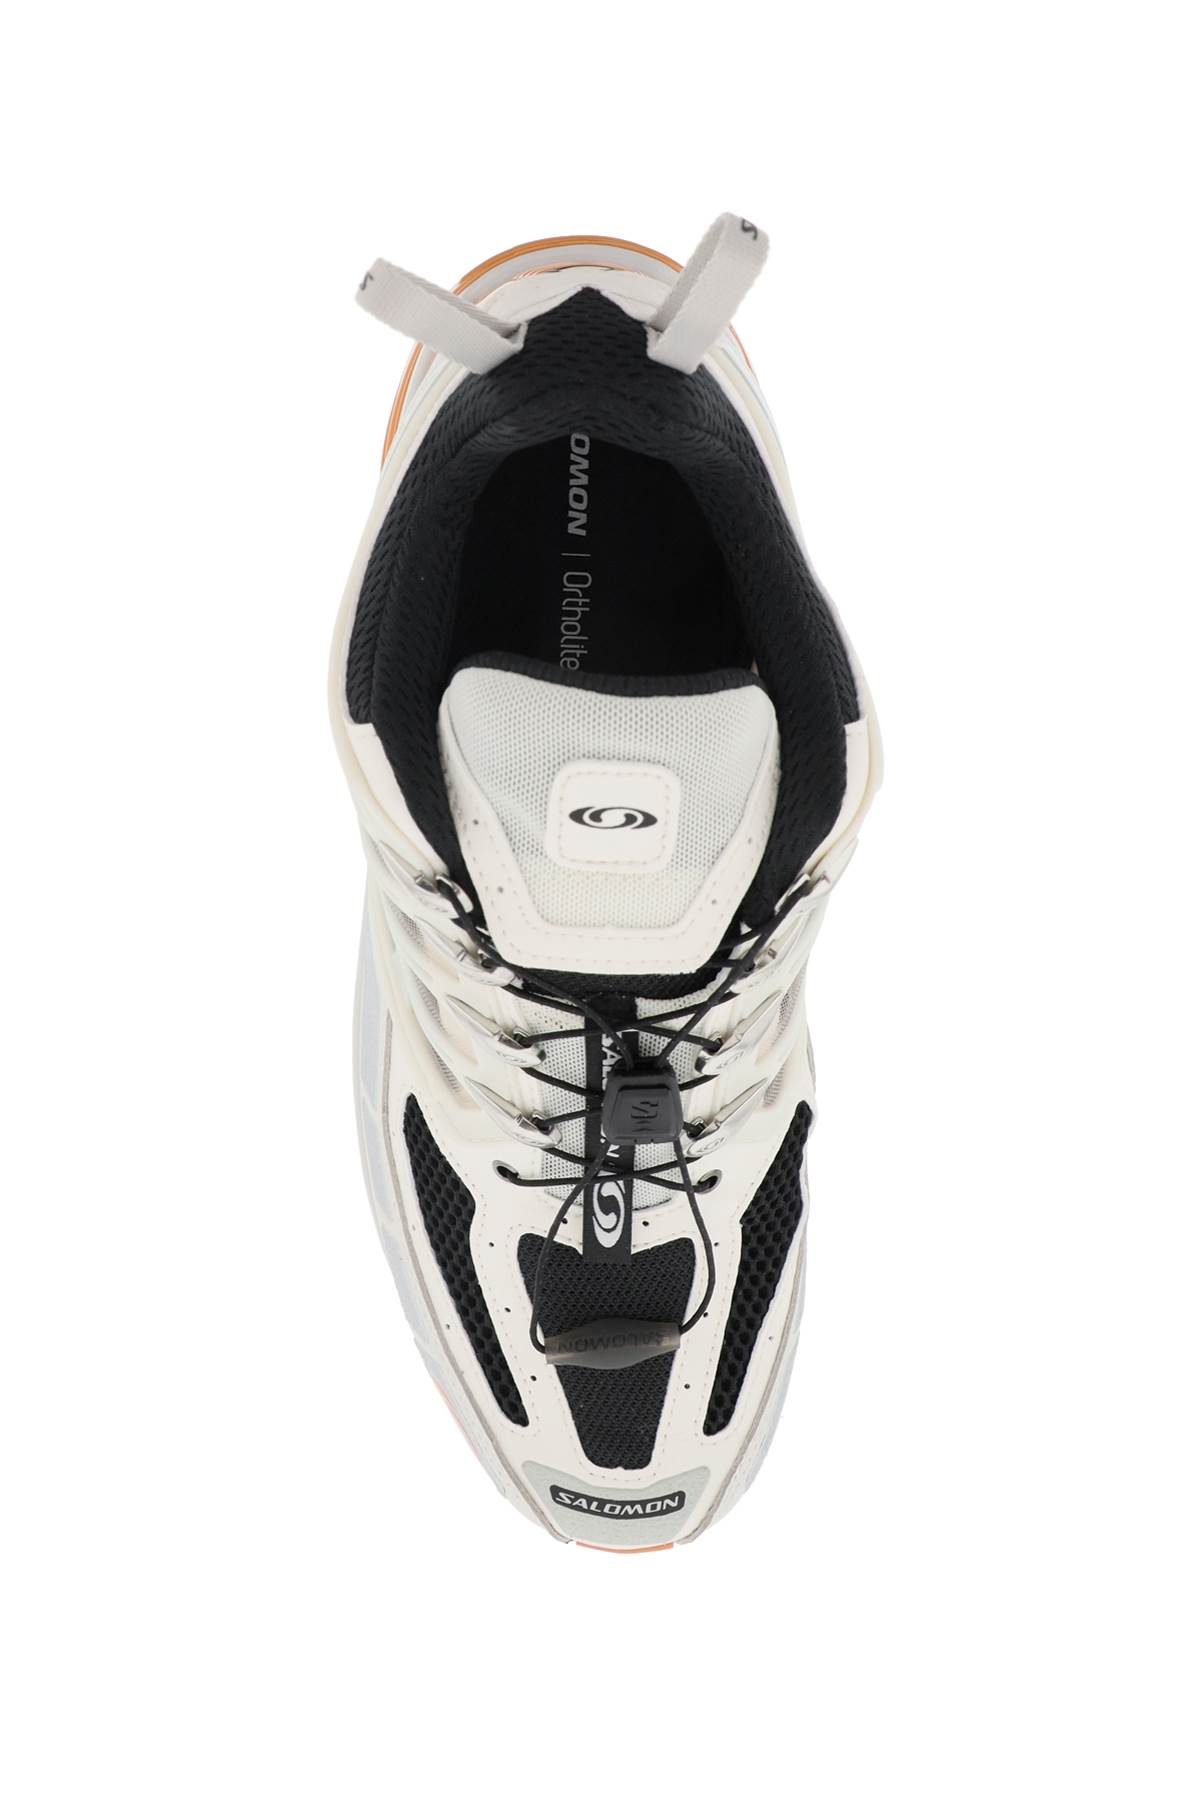 Shop Salomon Acs Pro Sneakers In Vanilla Ice Lunar Rock Tomato Cream (white)